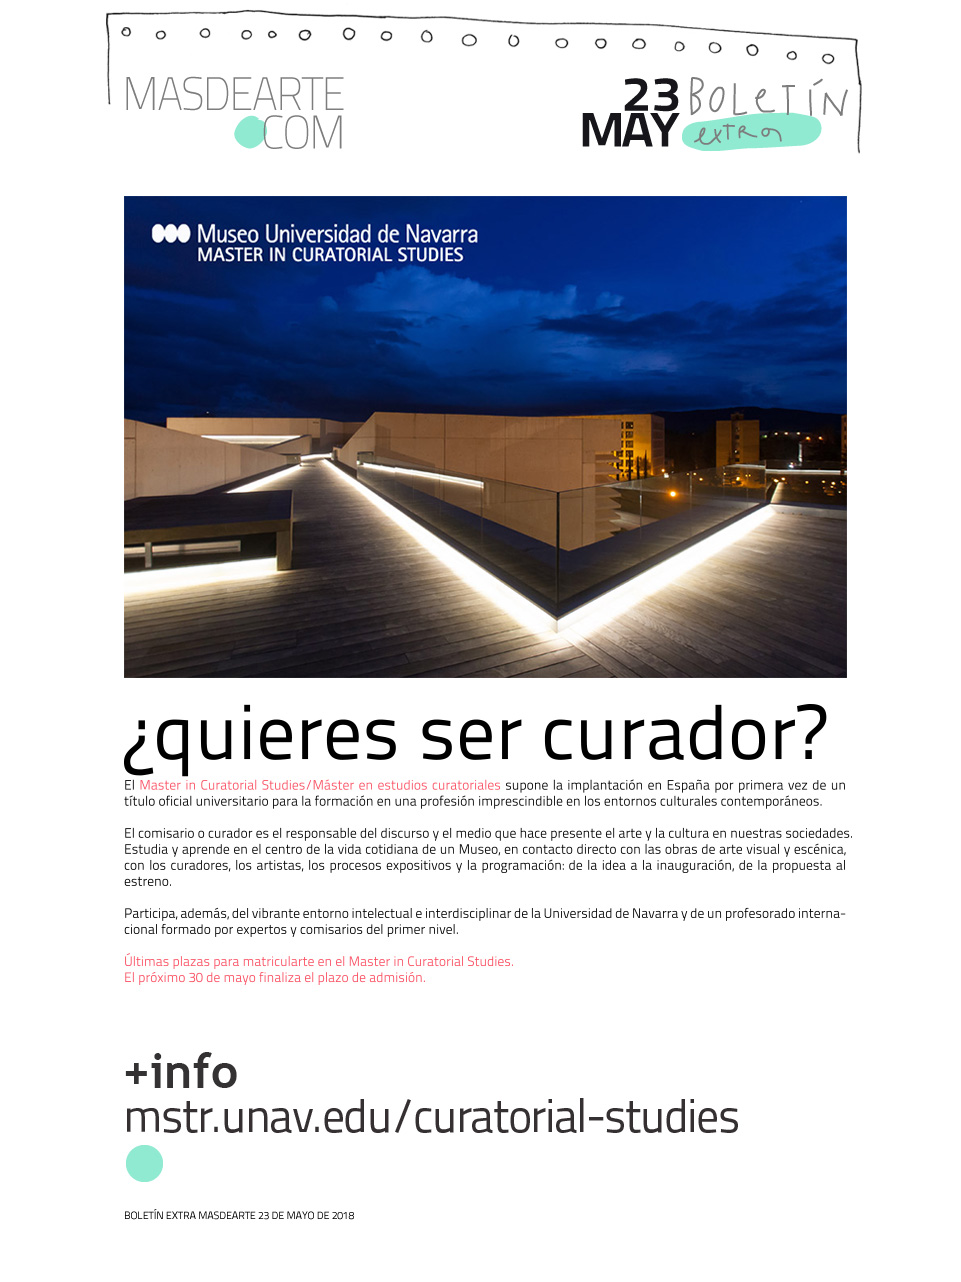 Extra masdearte: Últimas plazas para matricularte en el Master in Curatorial Studies